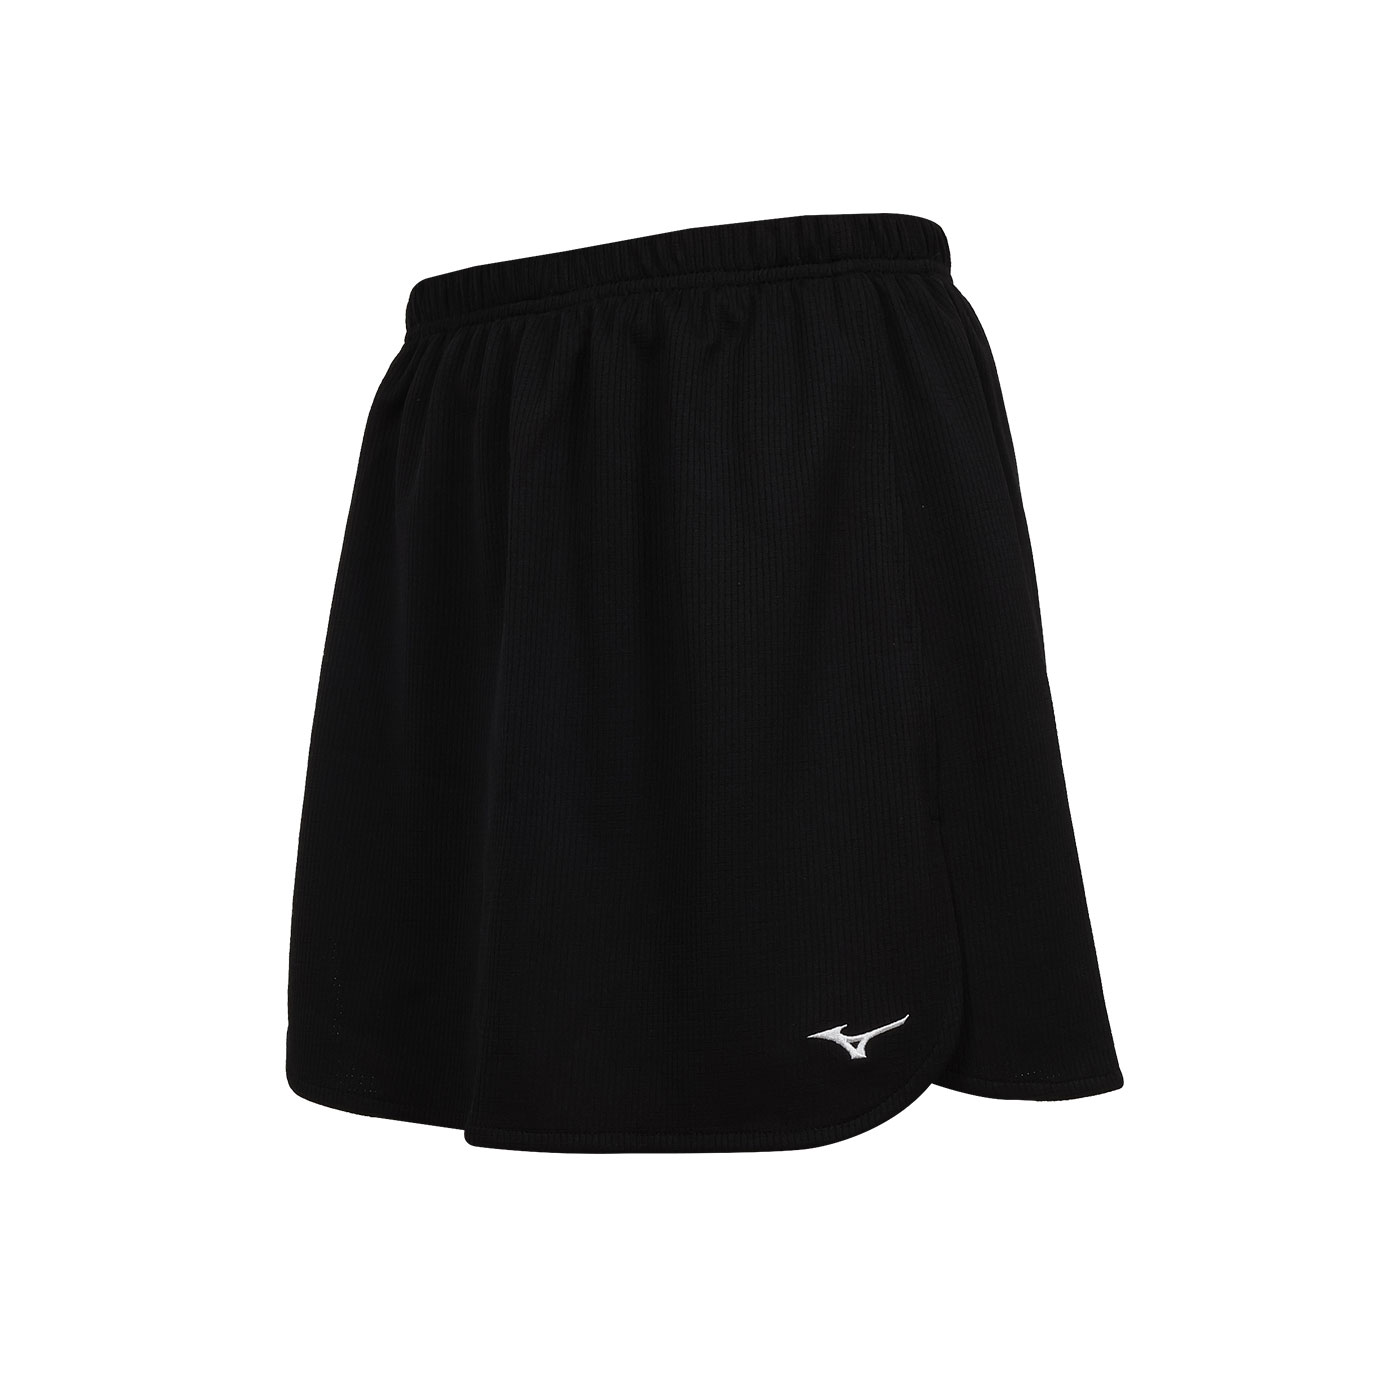 MIZUNO 女款羽球短褲裙  72TBBC0109 - 黑白